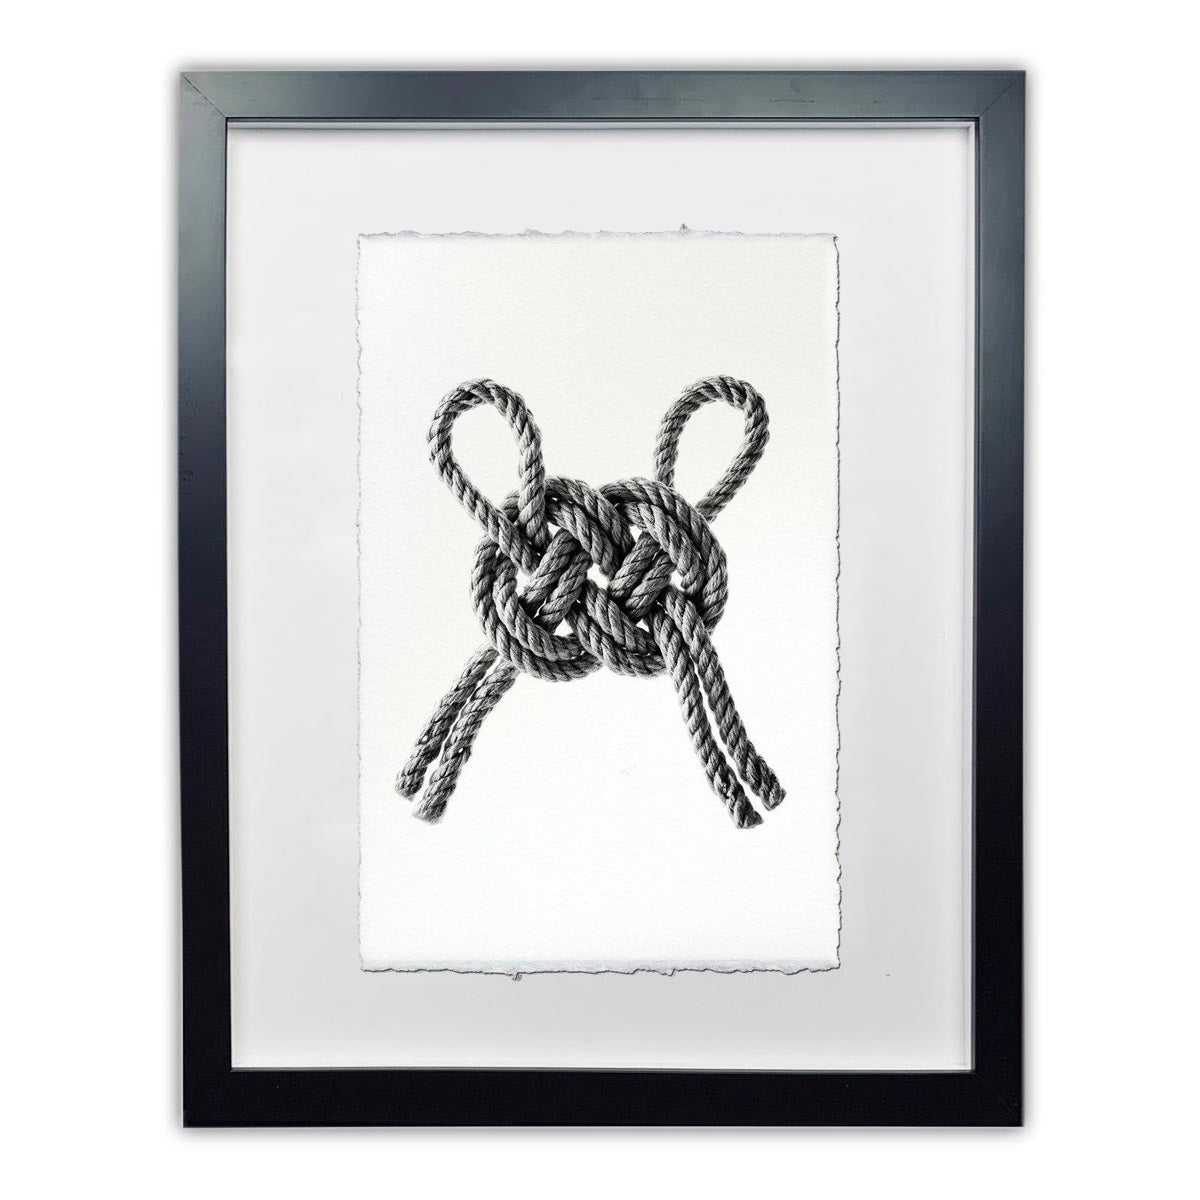 Carrick double bend nautical knot framed handmade paper wall art print 40"x60"